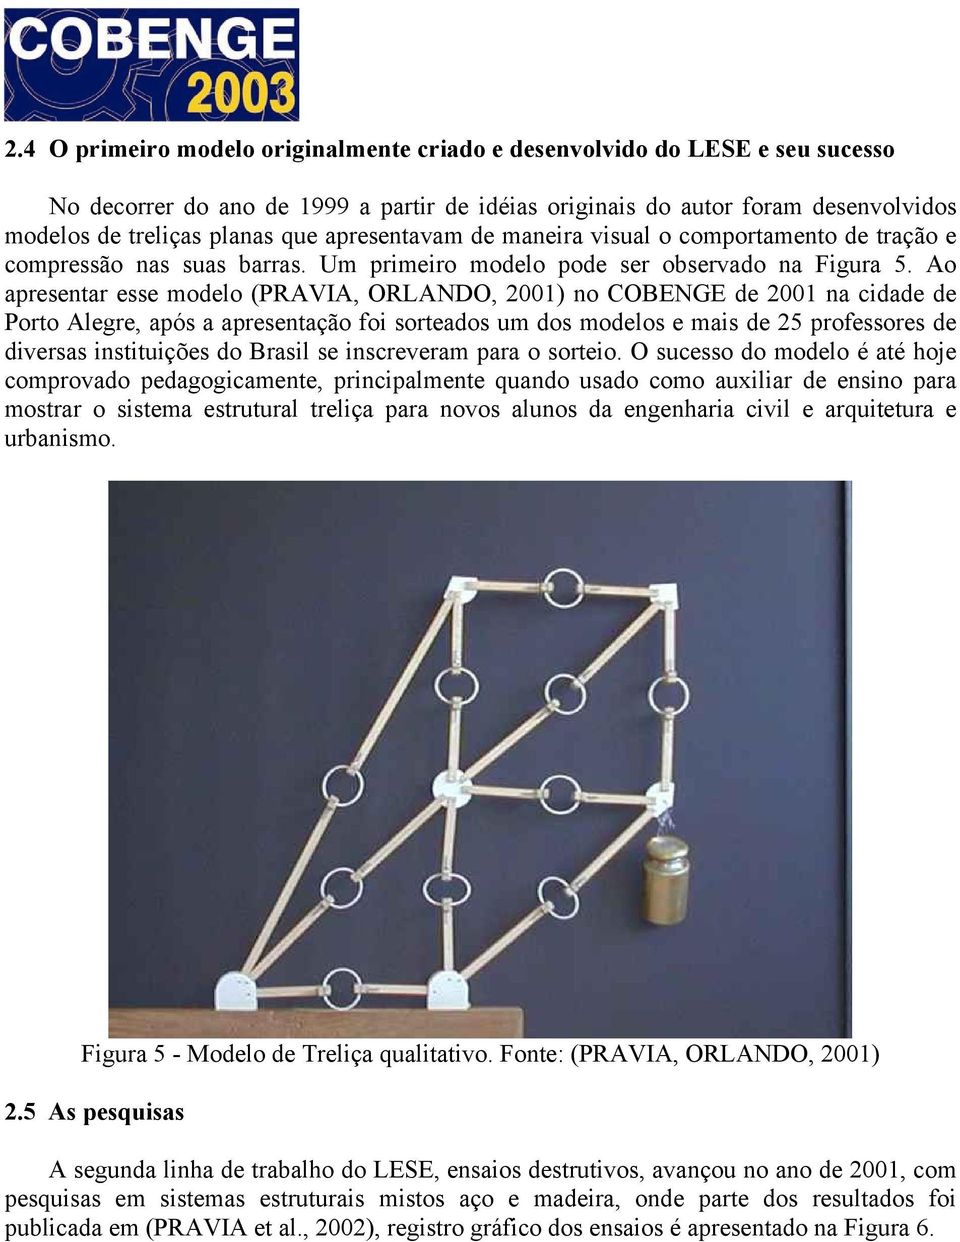 Ao apresentar esse modelo (PRAVIA, ORLANDO, 2001) no COBENGE de 2001 na cidade de Porto Alegre, após a apresentação foi sorteados um dos modelos e mais de 25 professores de diversas instituições do